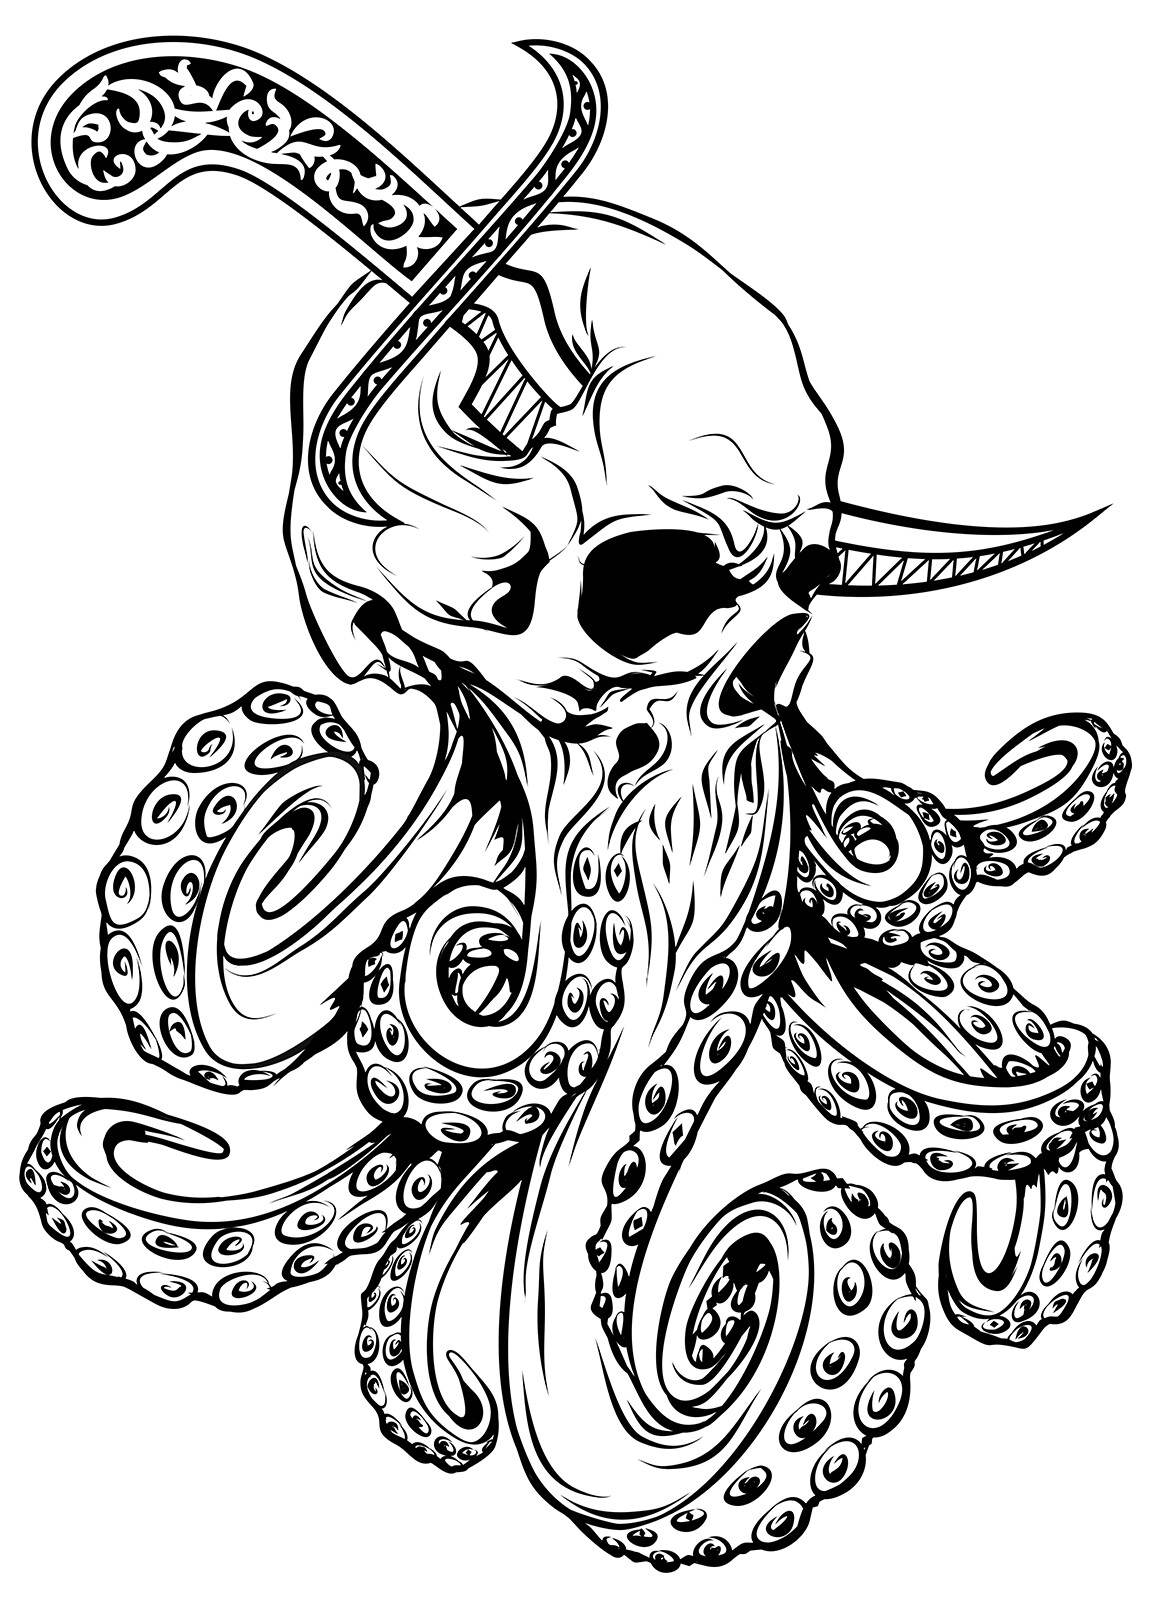 Octopus kraken squid animal skull tattoo graphic art phone case cover  eBay